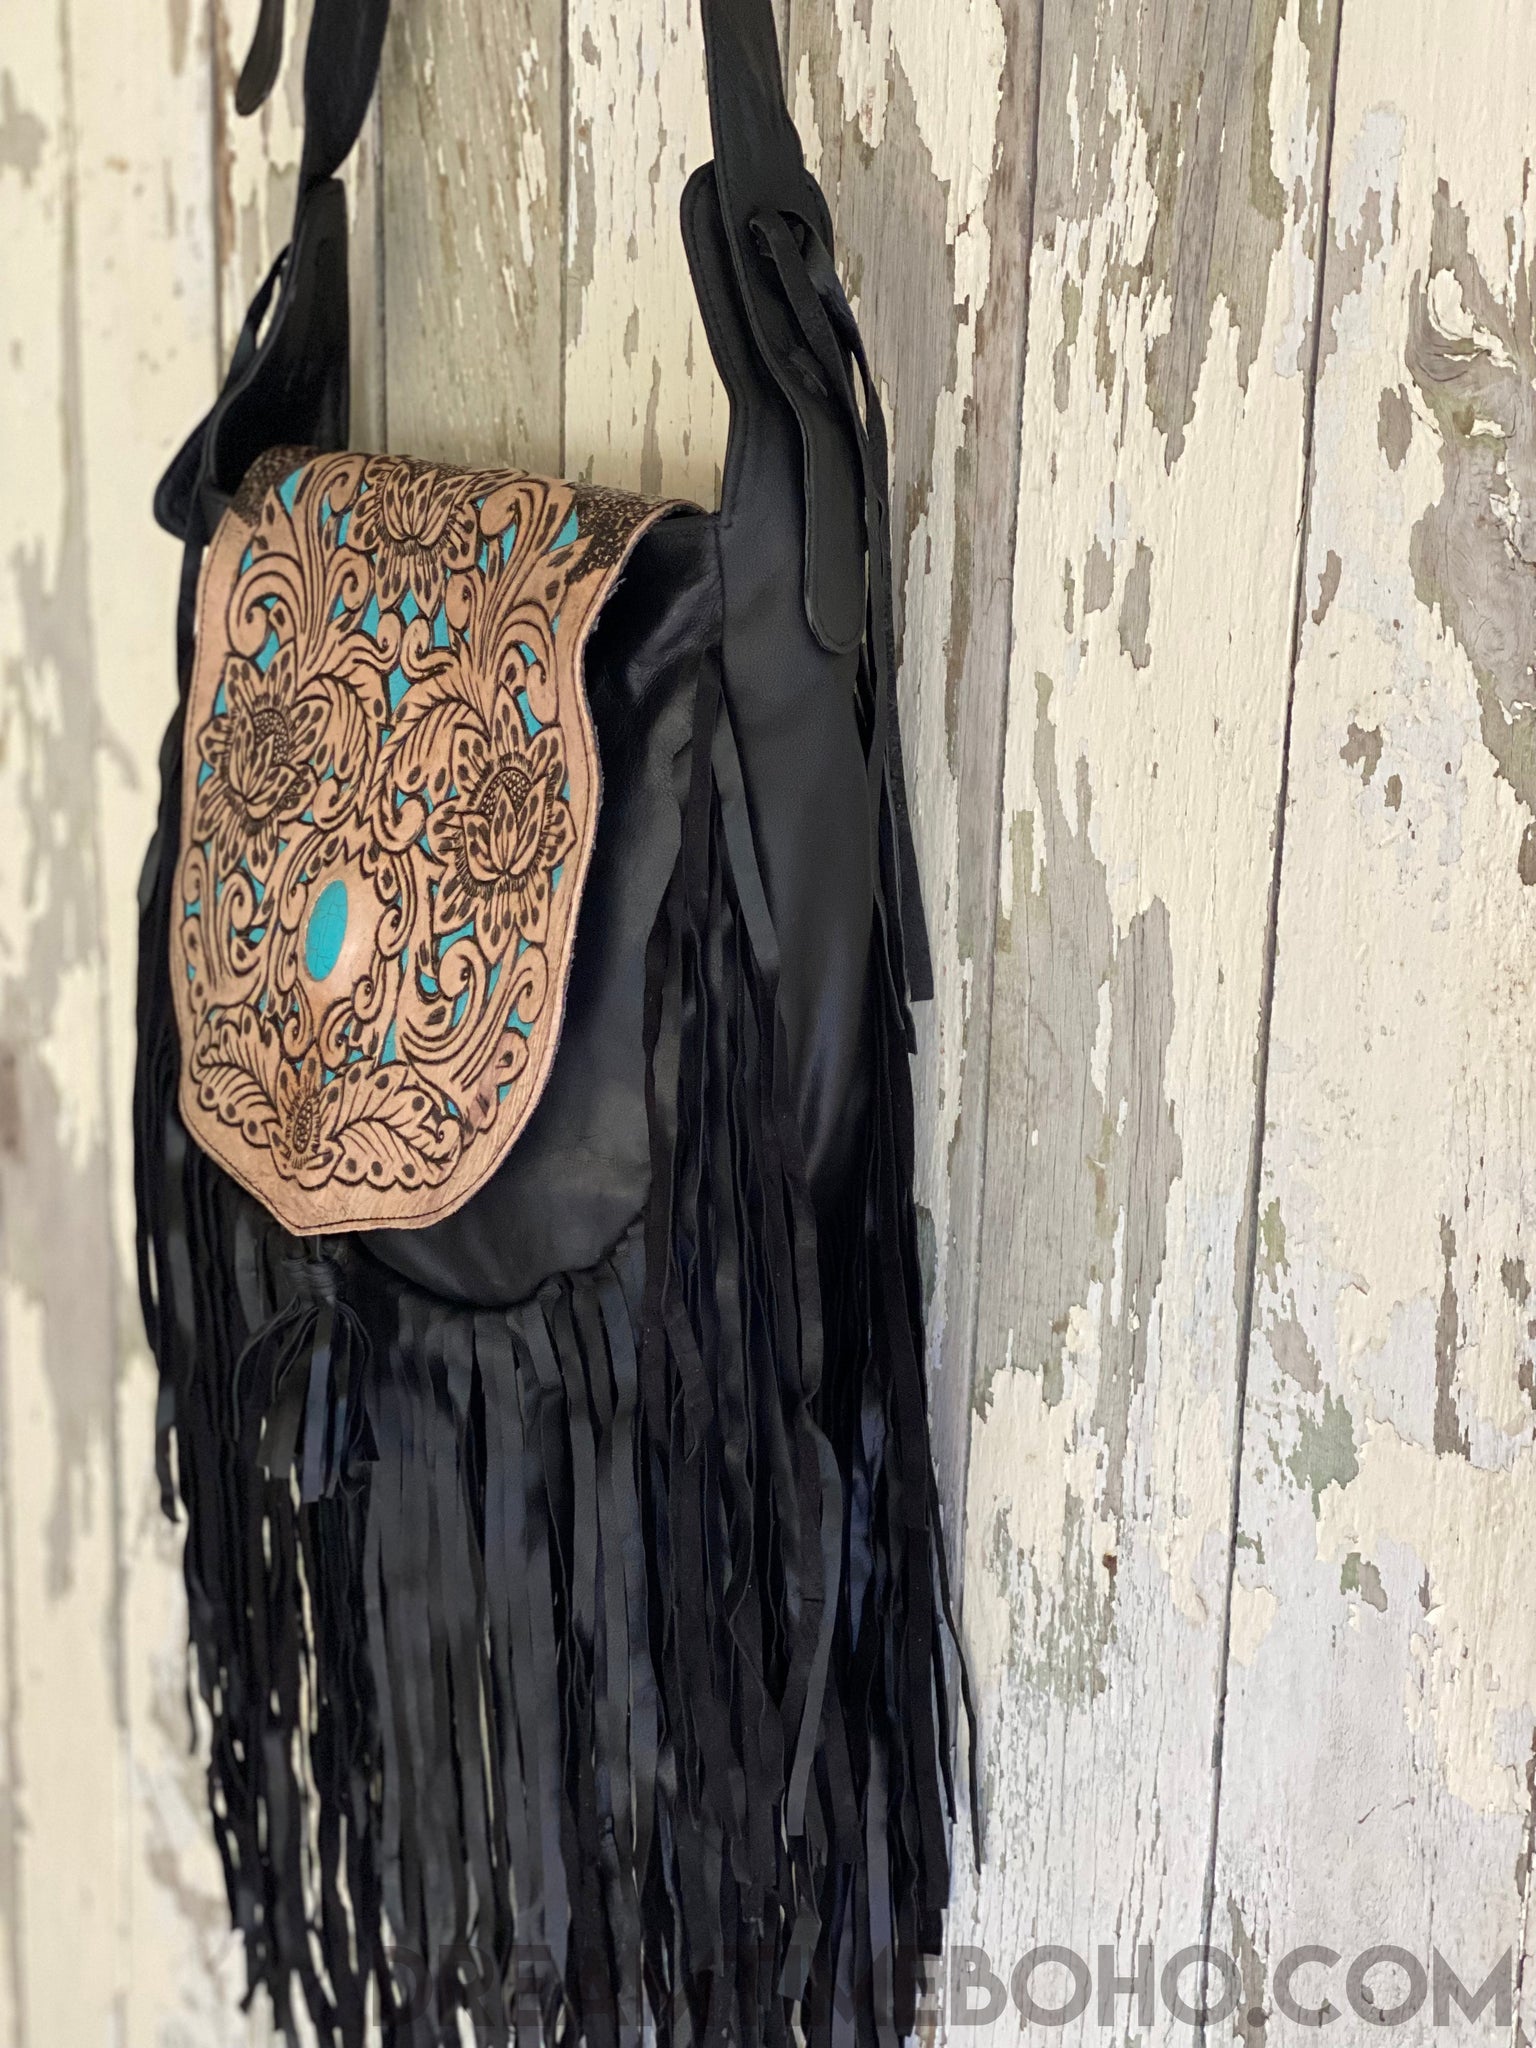 Hand Tooled Black Raven Fringed Leather Boho Bag – Dreamtime Boho